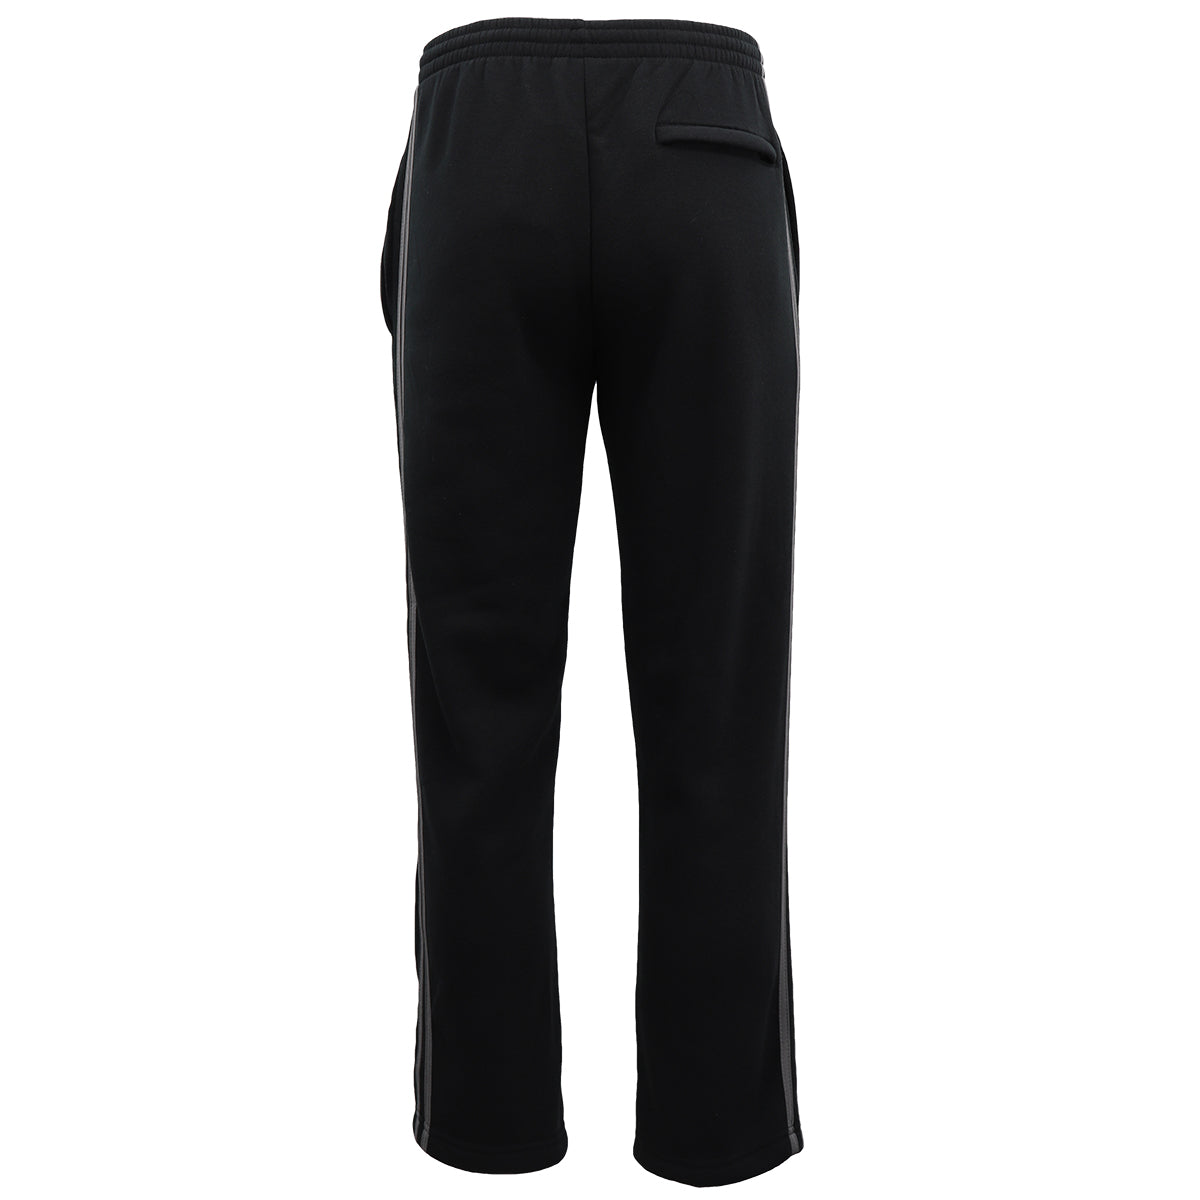 Men's Fleece Casual Sports Track Pants w Zip Pocket Striped Sweat Trousers S-6XL, Dark Grey, S